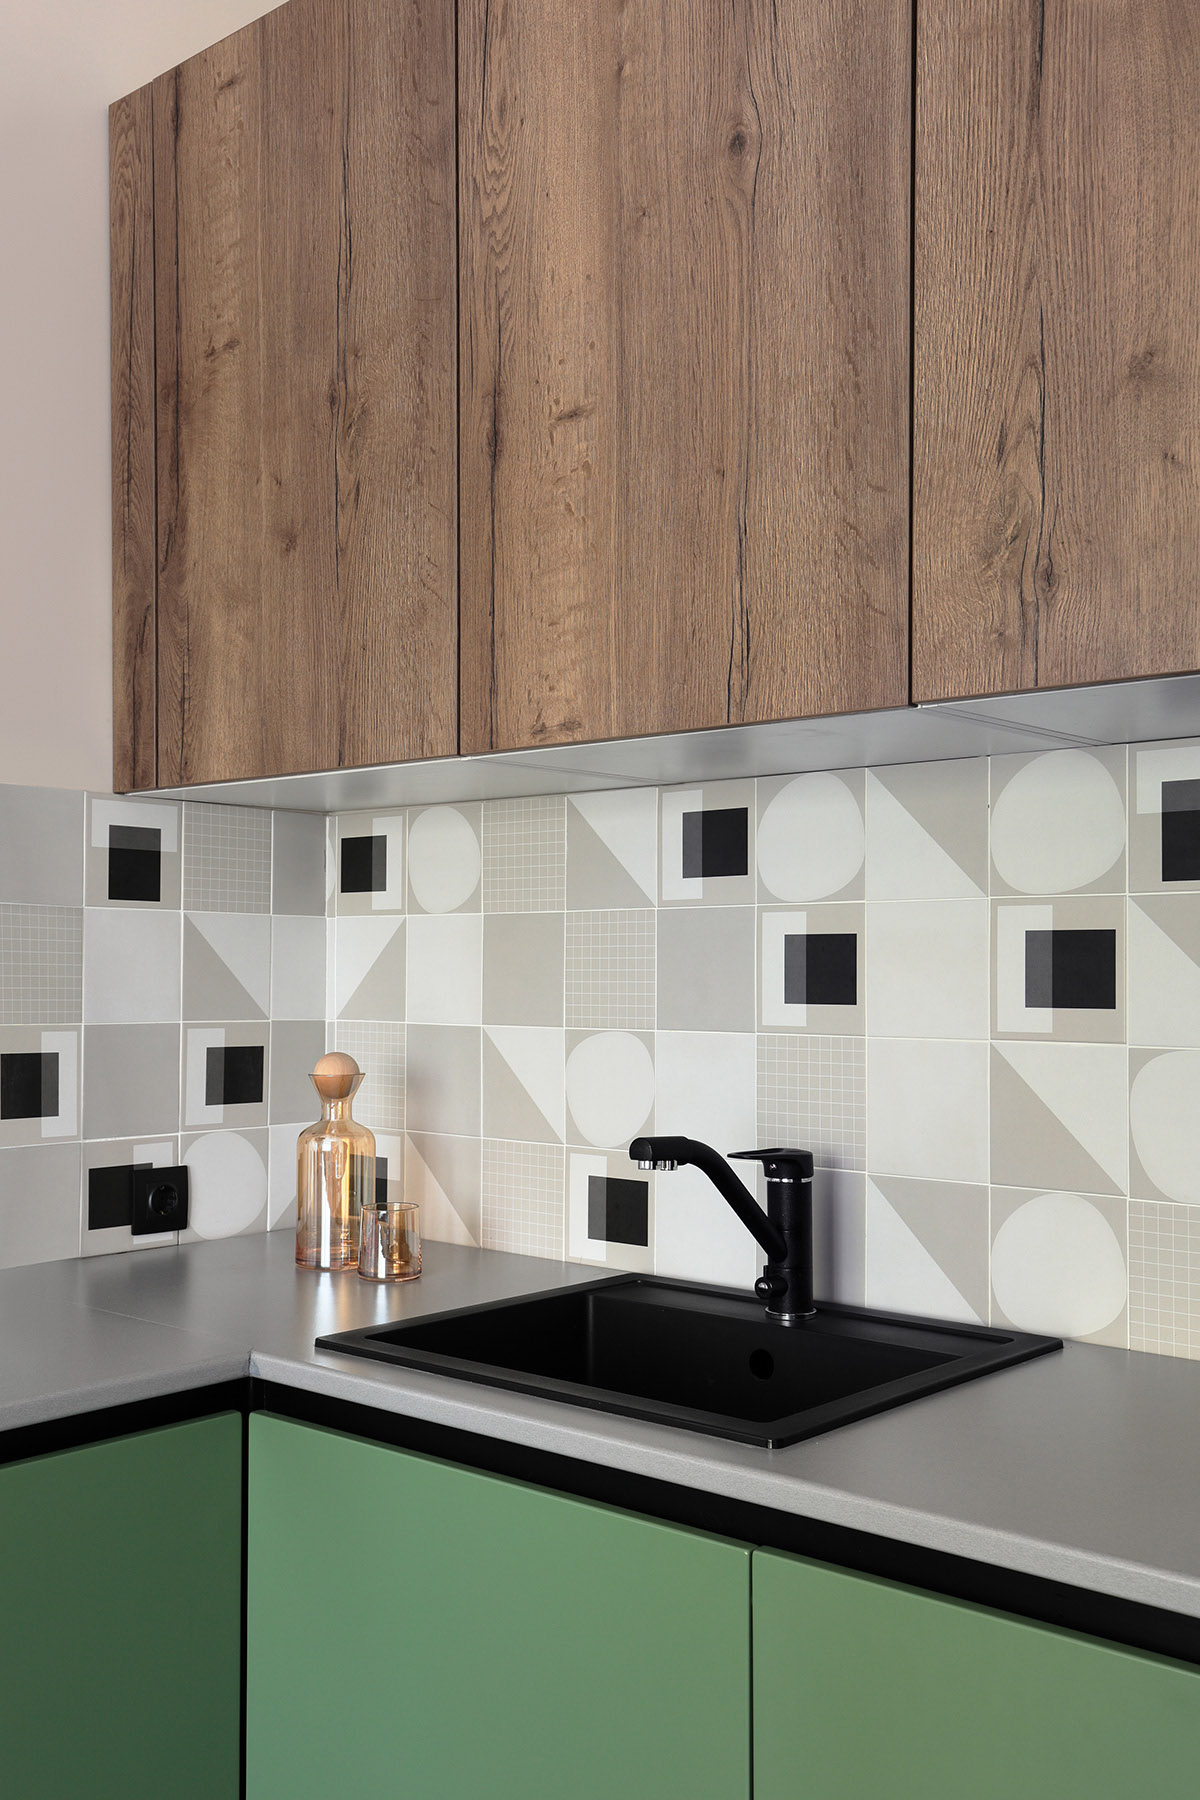 Gạch ốp tường bếp hình học nổi bật quanh nhà bếp. Bồn rửa màu đen hài hòa với bề mặt bàn bếp màu xám sang trọng.